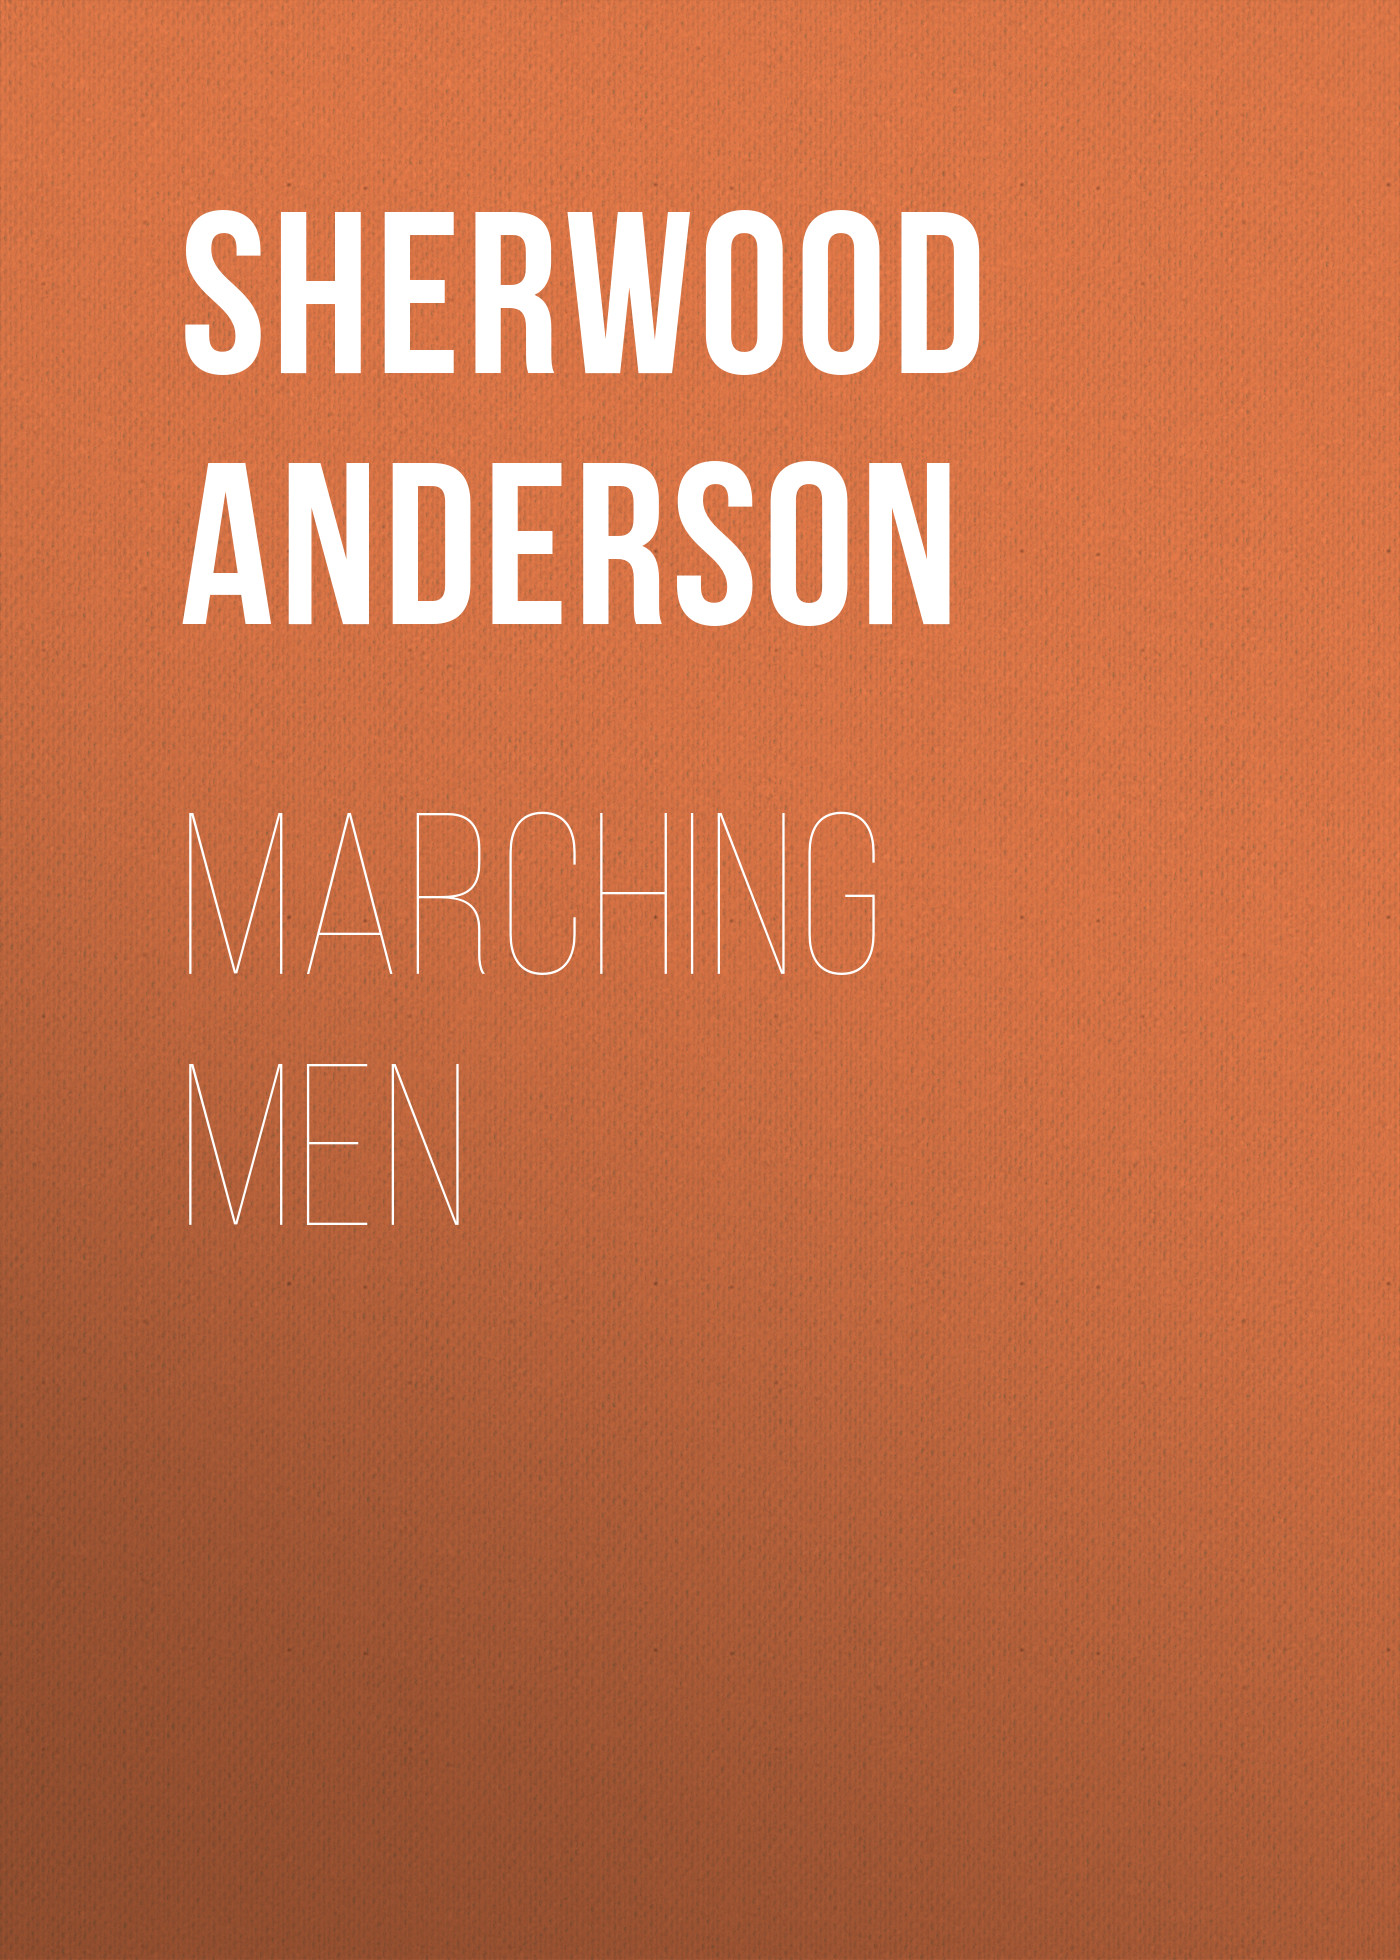 Книга Marching Men из серии , созданная Sherwood Anderson, может относится к жанру Зарубежная классика, Литература 20 века, Зарубежная старинная литература. Стоимость электронной книги Marching Men с идентификатором 36095429 составляет 0 руб.